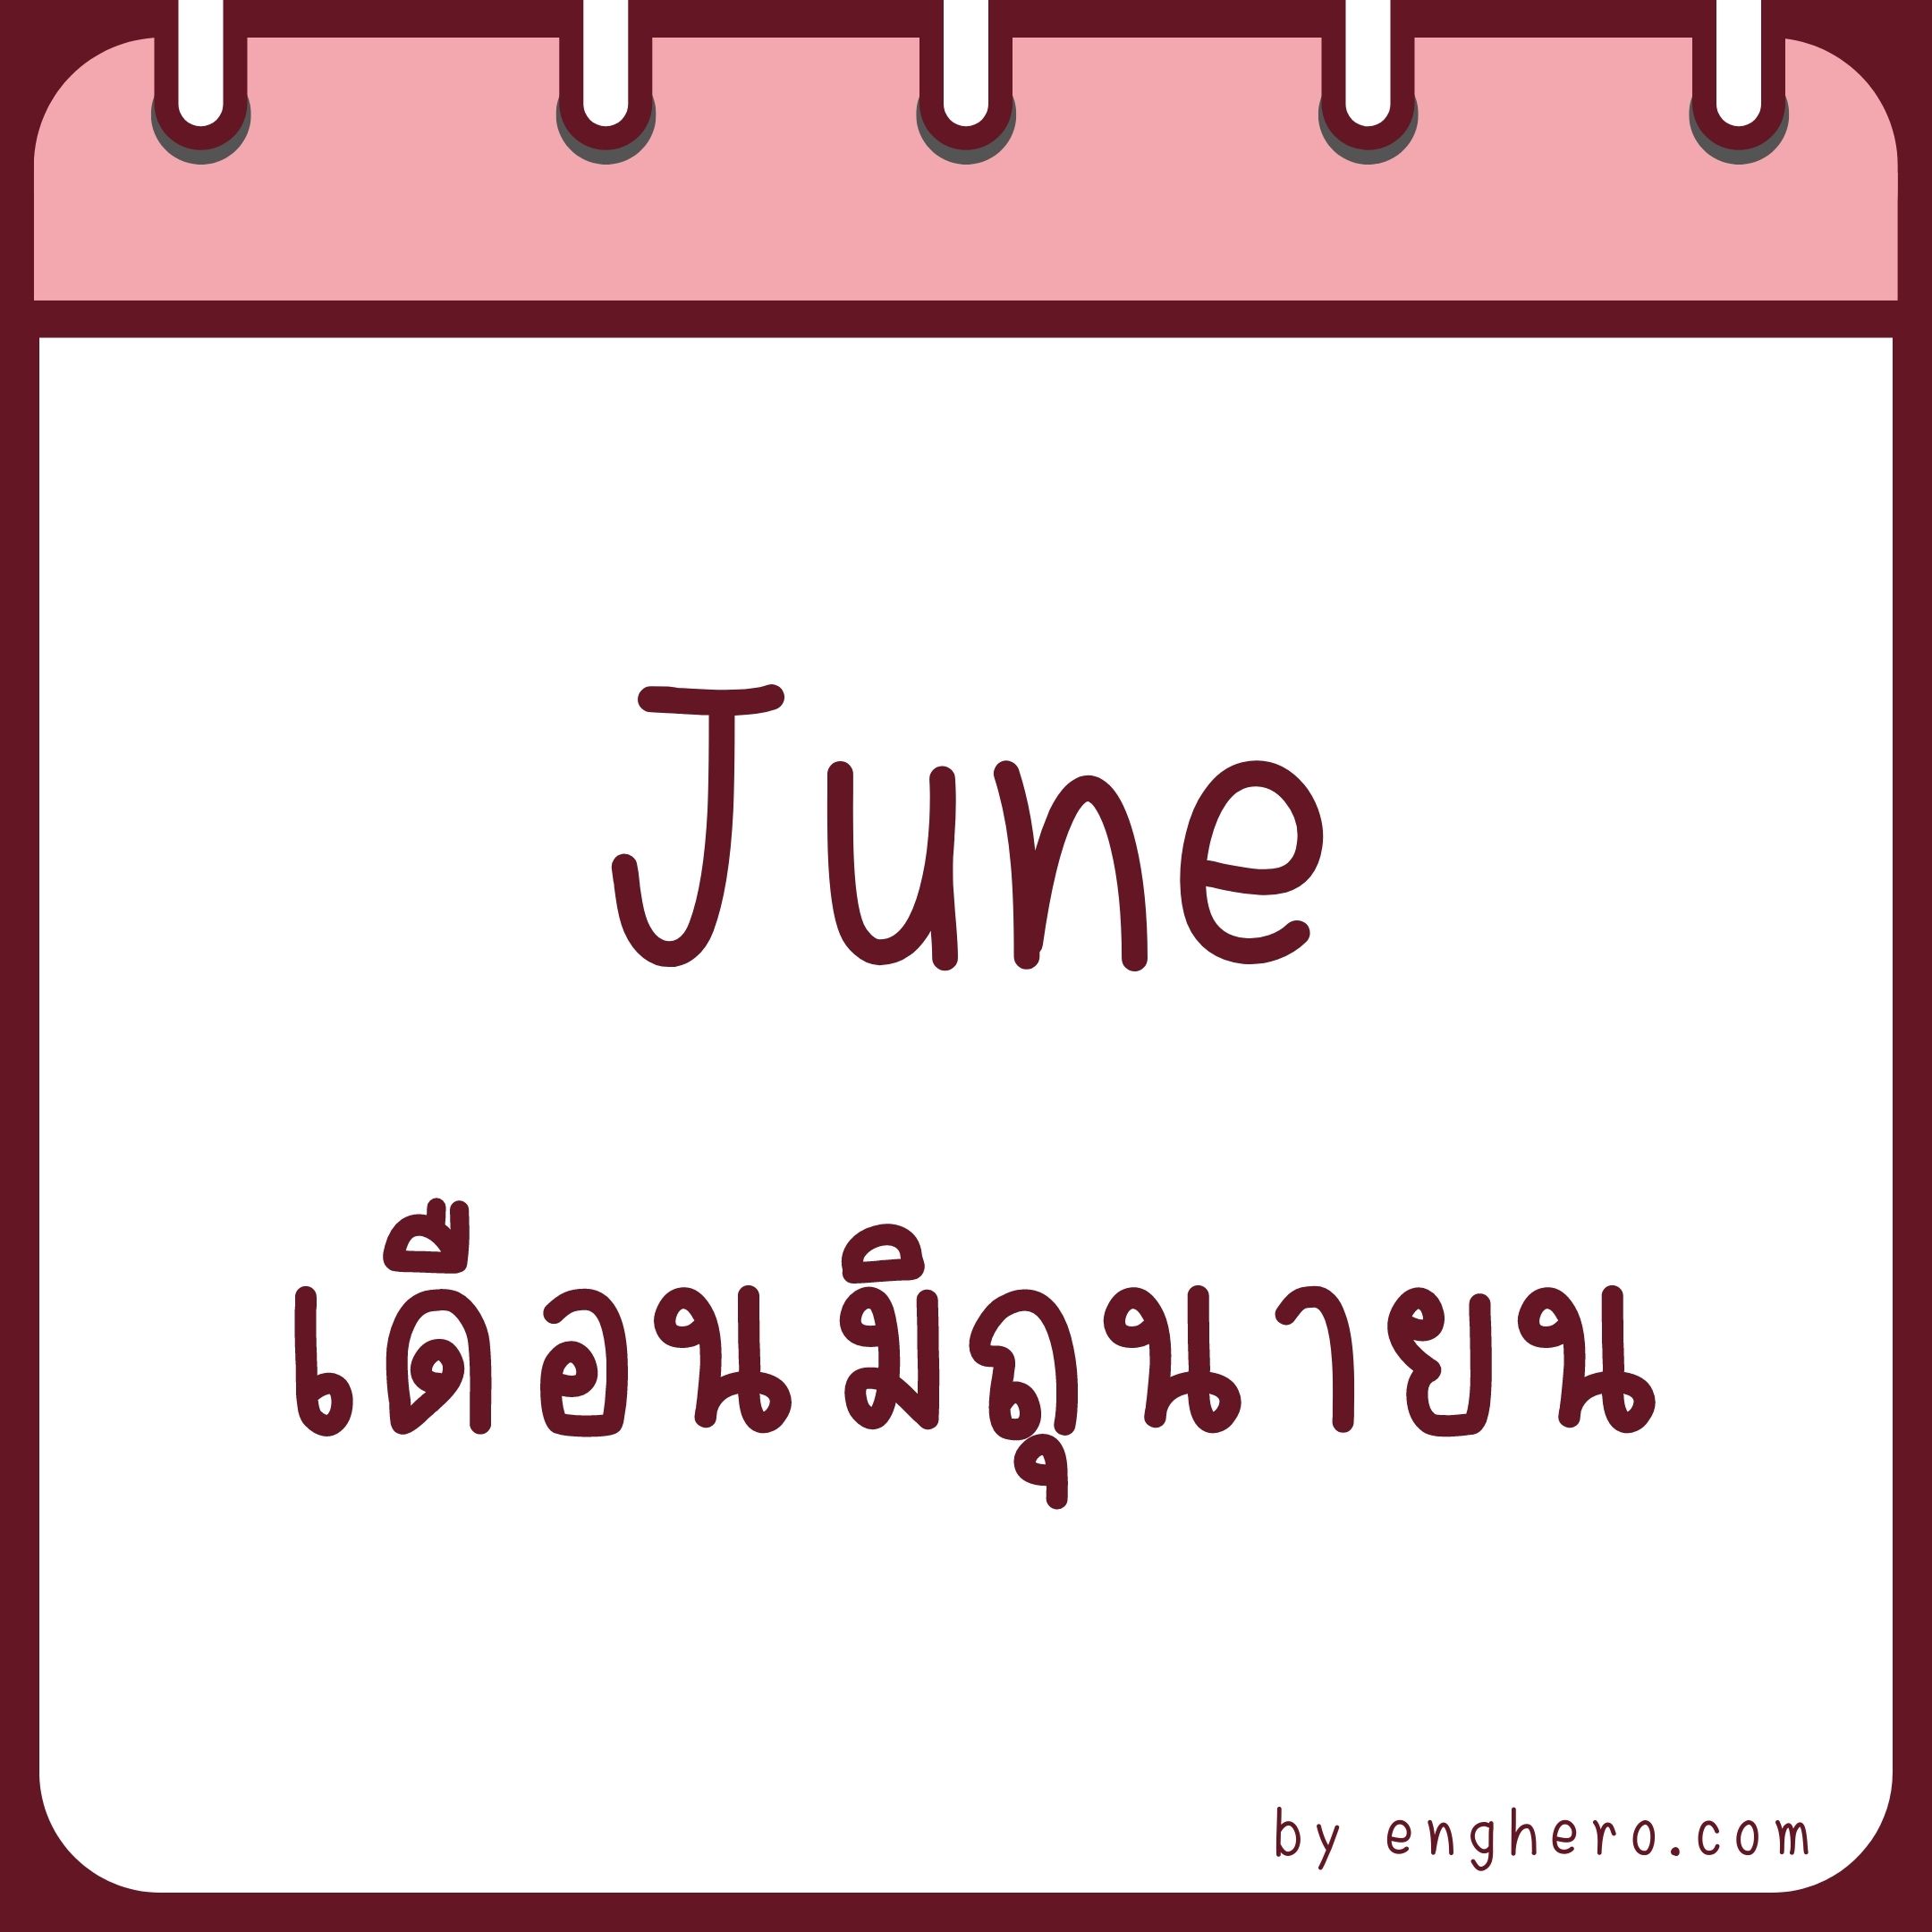 เดือนมิถุนายน ภาษาอังกฤษ คือ June